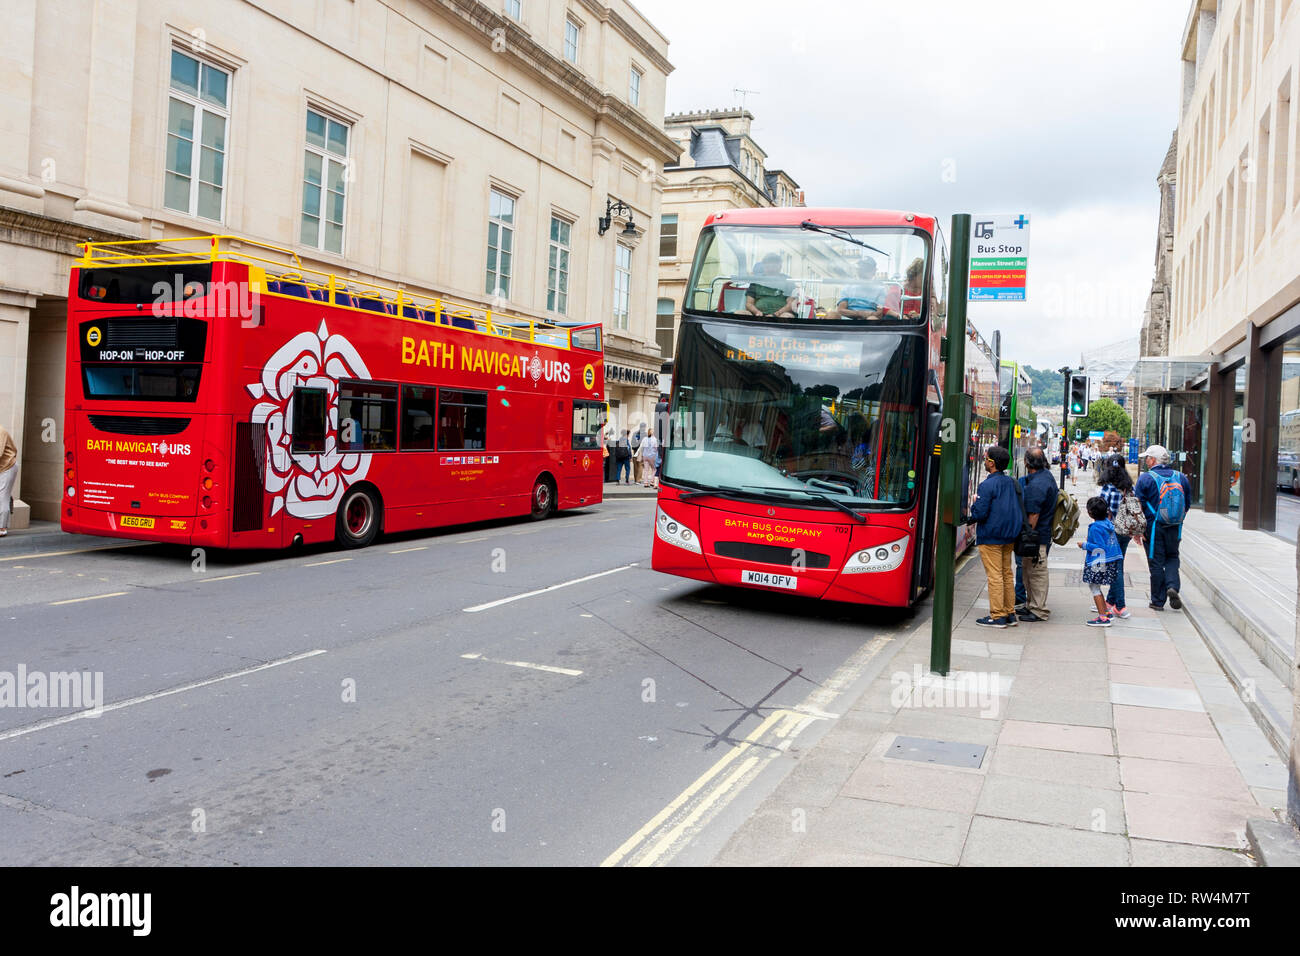 Zwei oben offene Badewanne Navigatours Tour Busse im Manvers Street, Bath, N.E. Somerset, England, Großbritannien Stockfoto